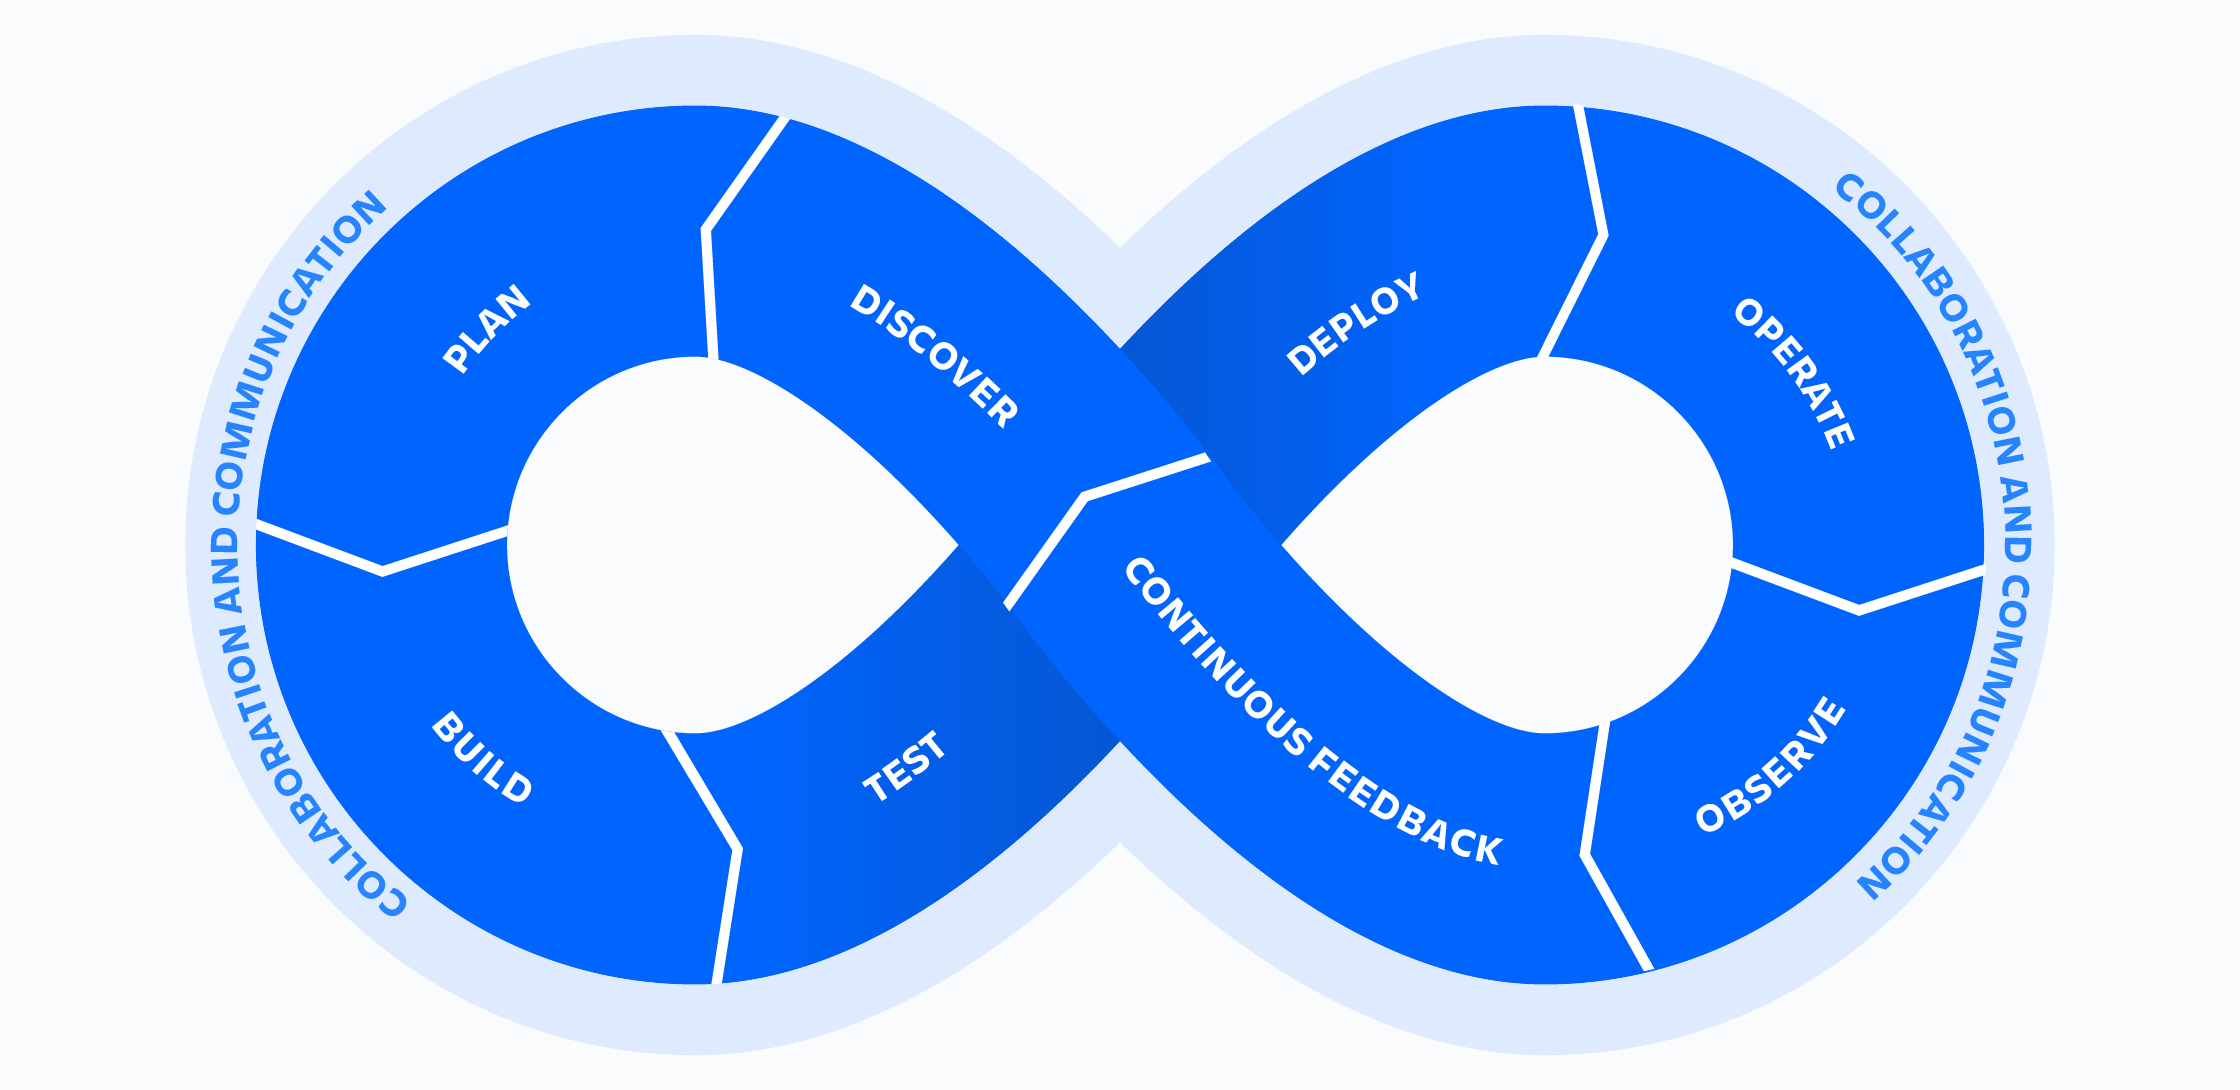 Atlassian DevOps infinity wheel